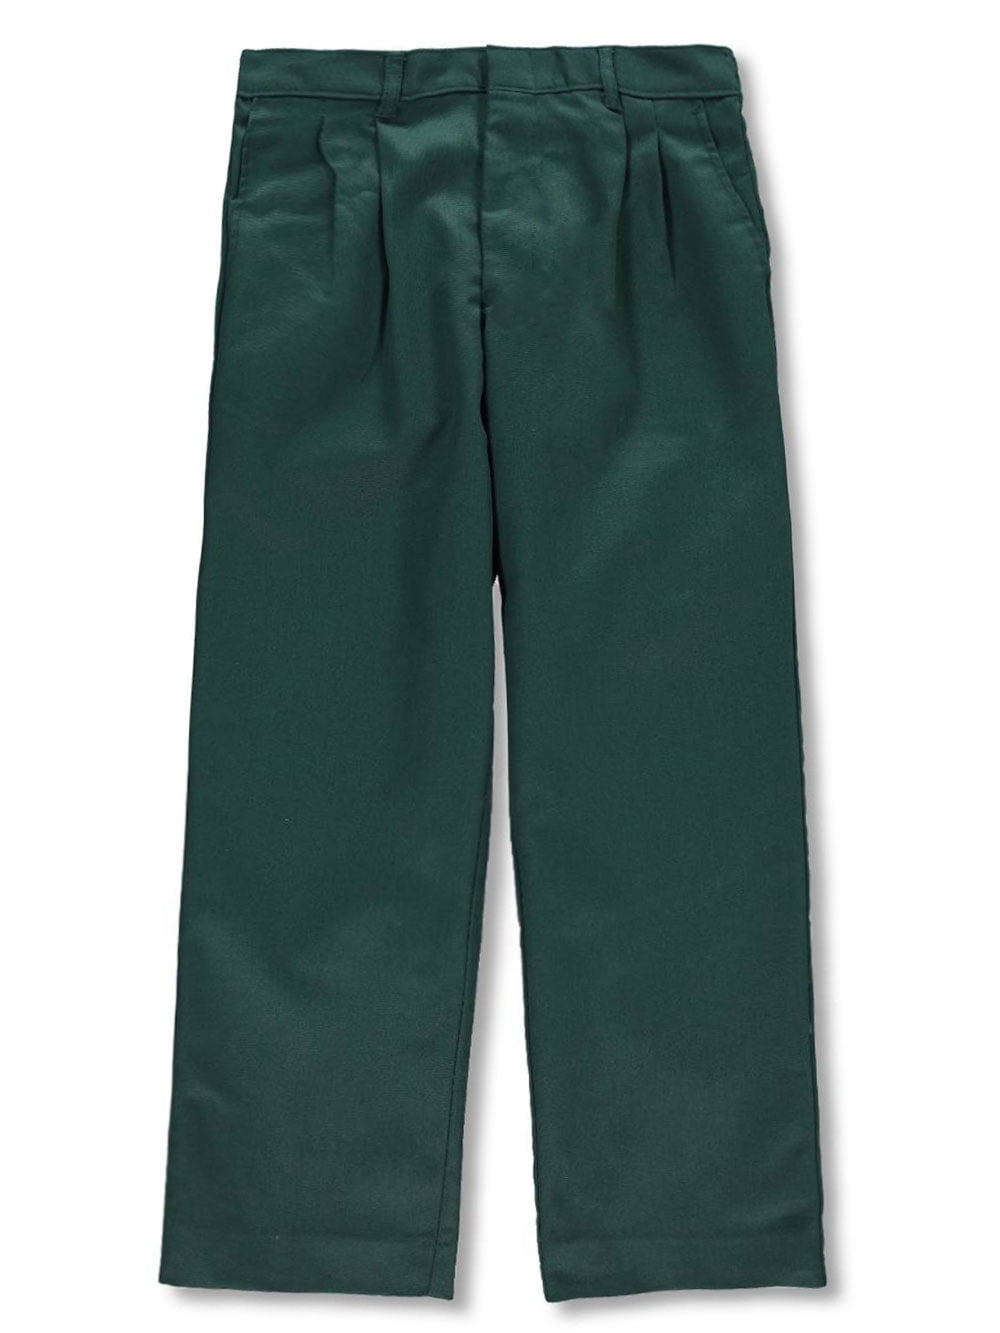 size 20 boys pants